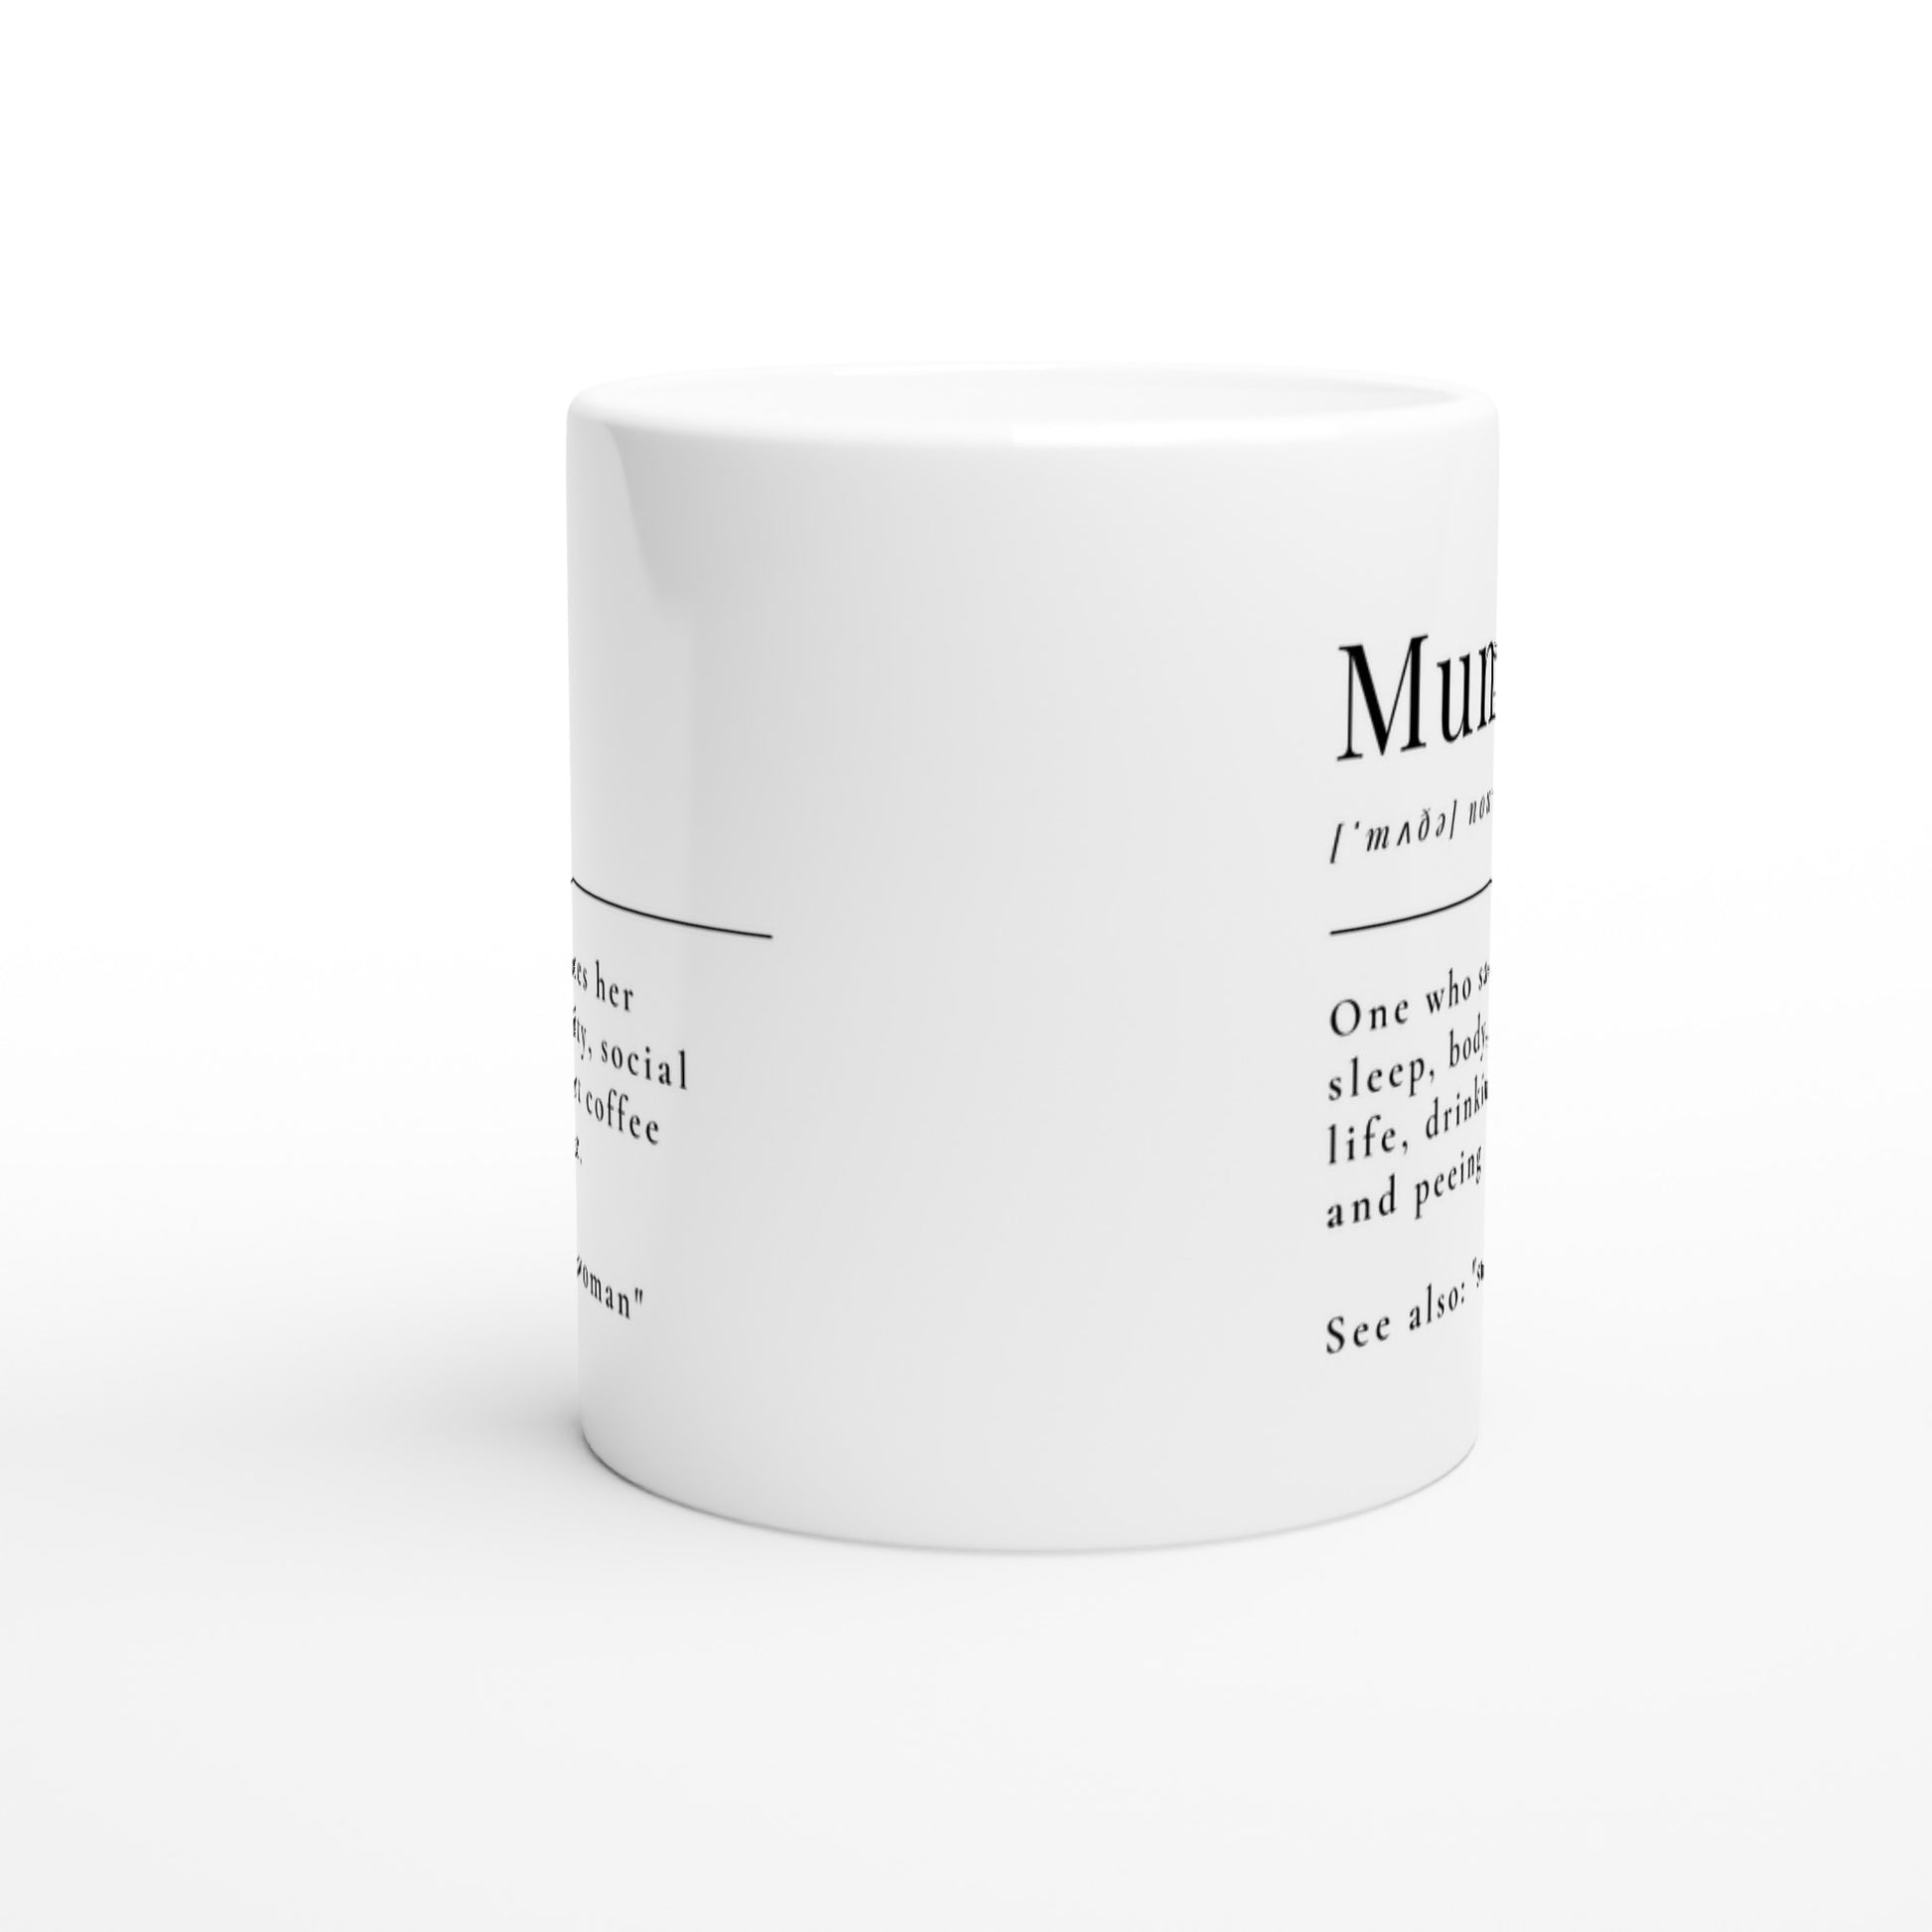 Mum Definition - White 11oz Ceramic Mug White 11oz Mug Mum